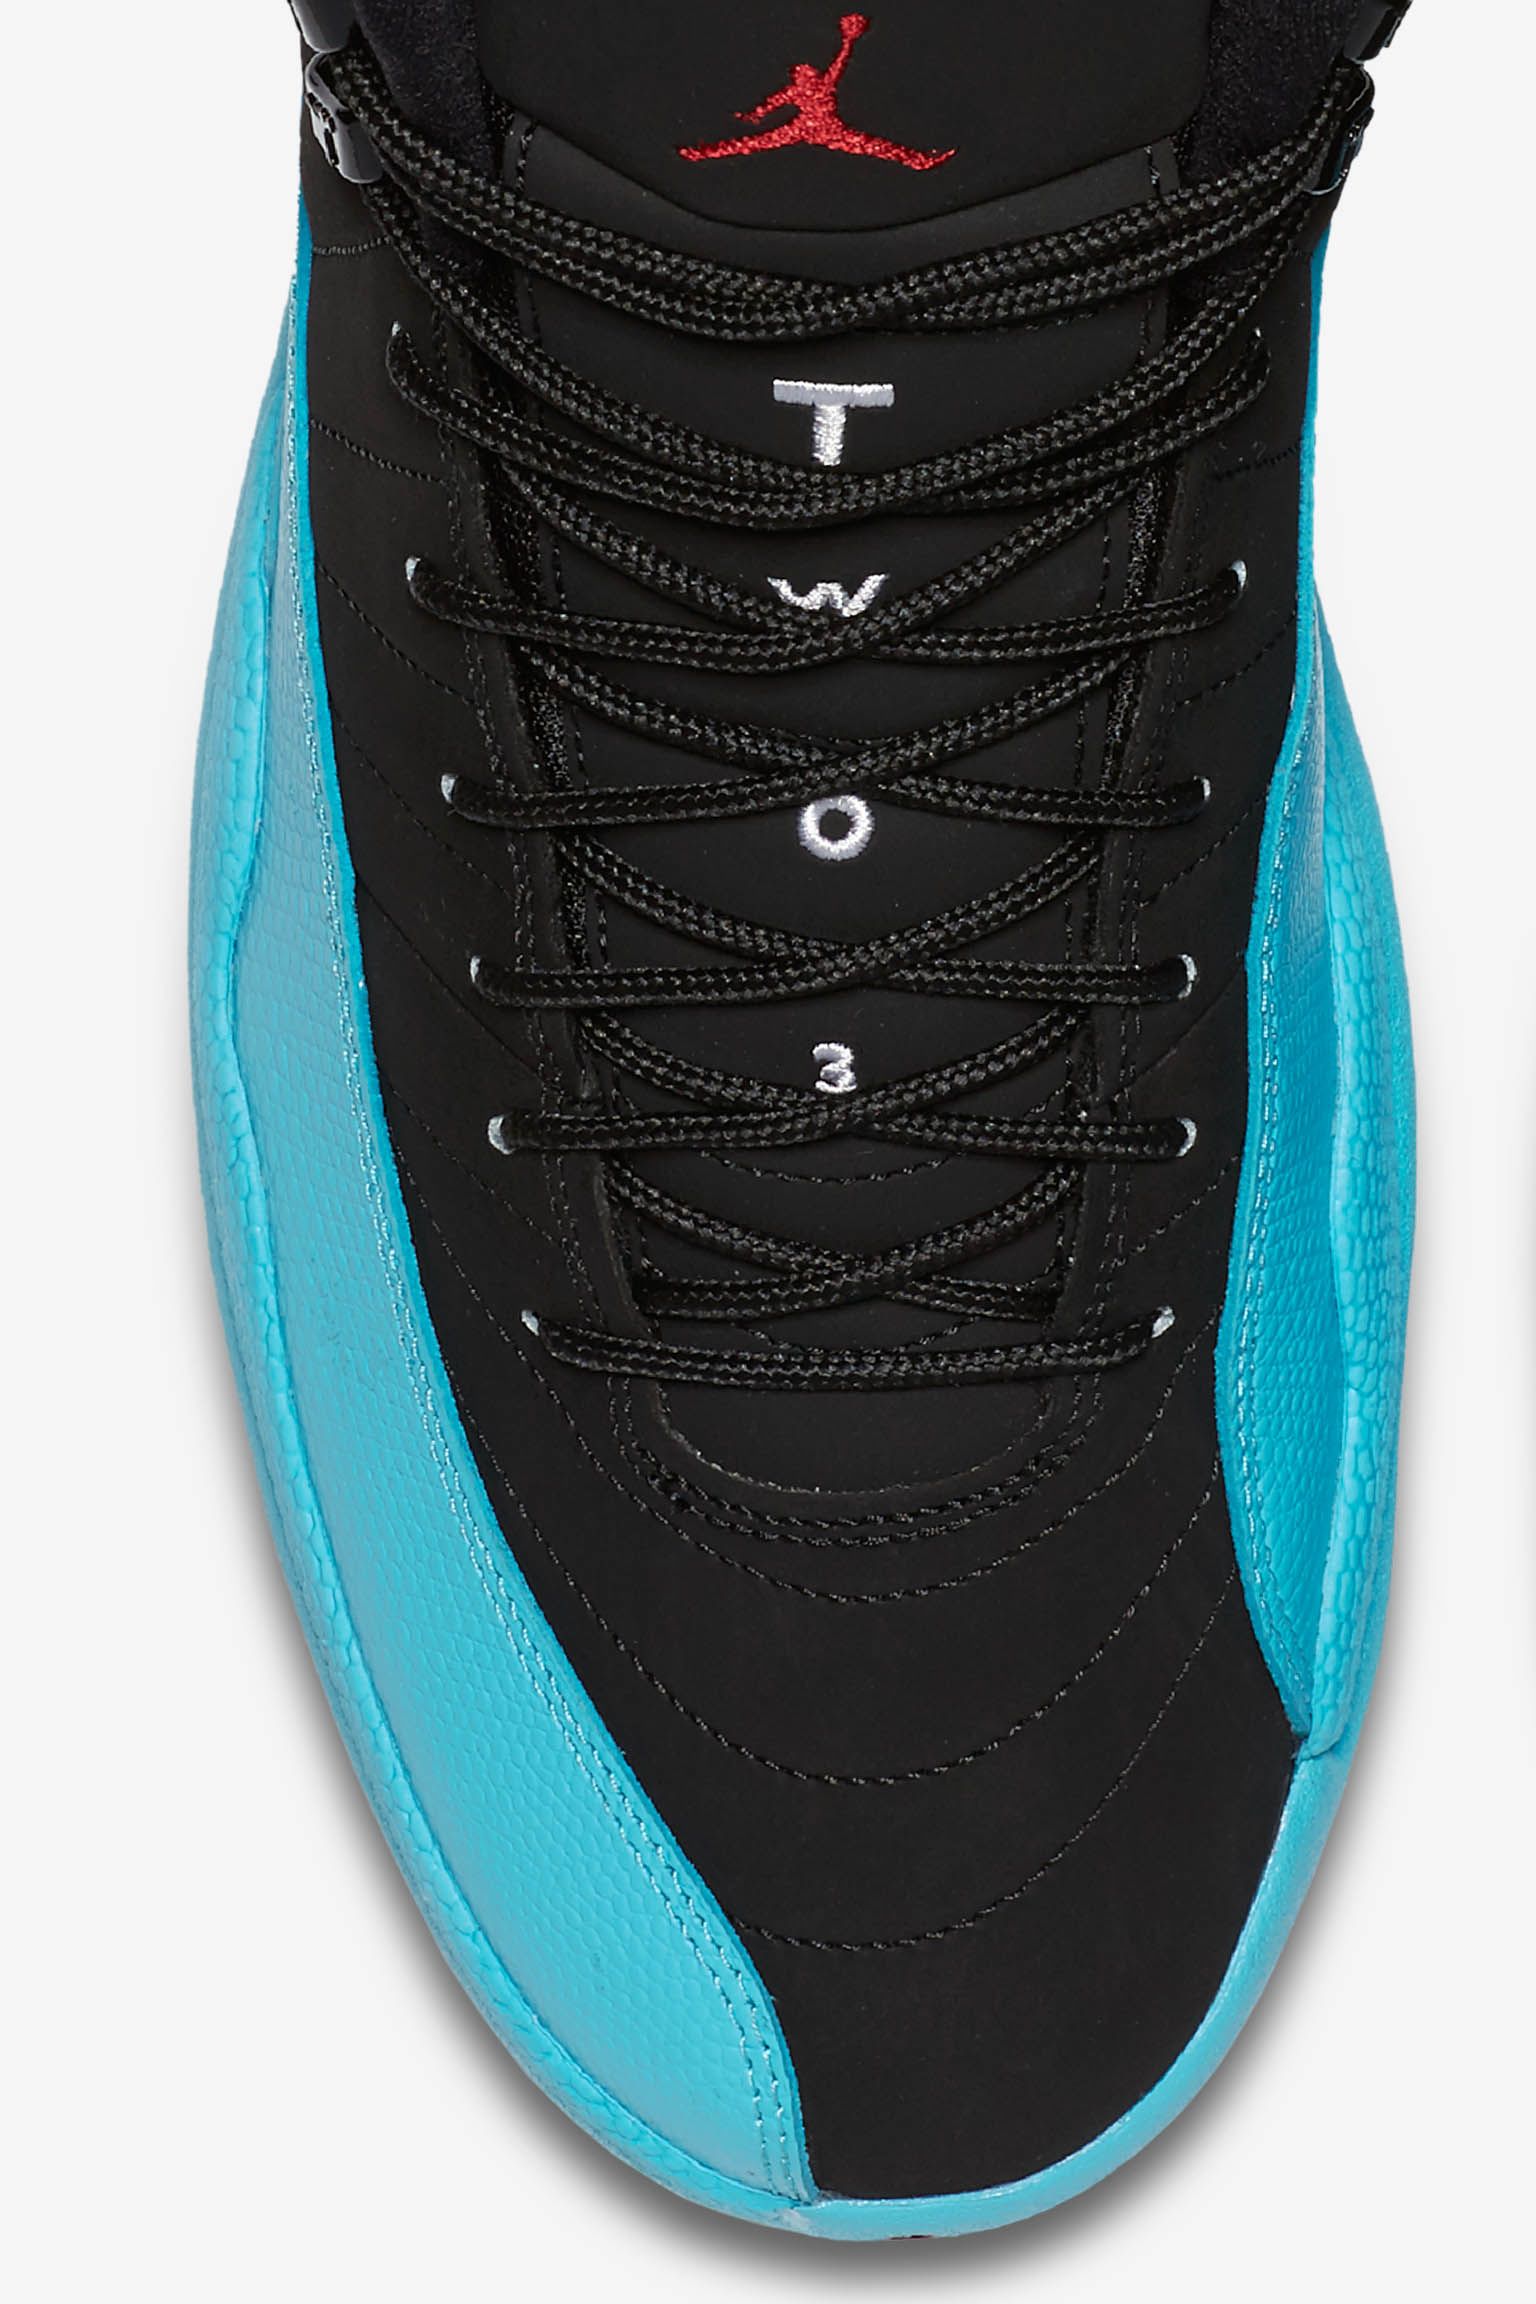 Air Jordan 12 Retro 'Gamma Blue'. Nike SNKRS